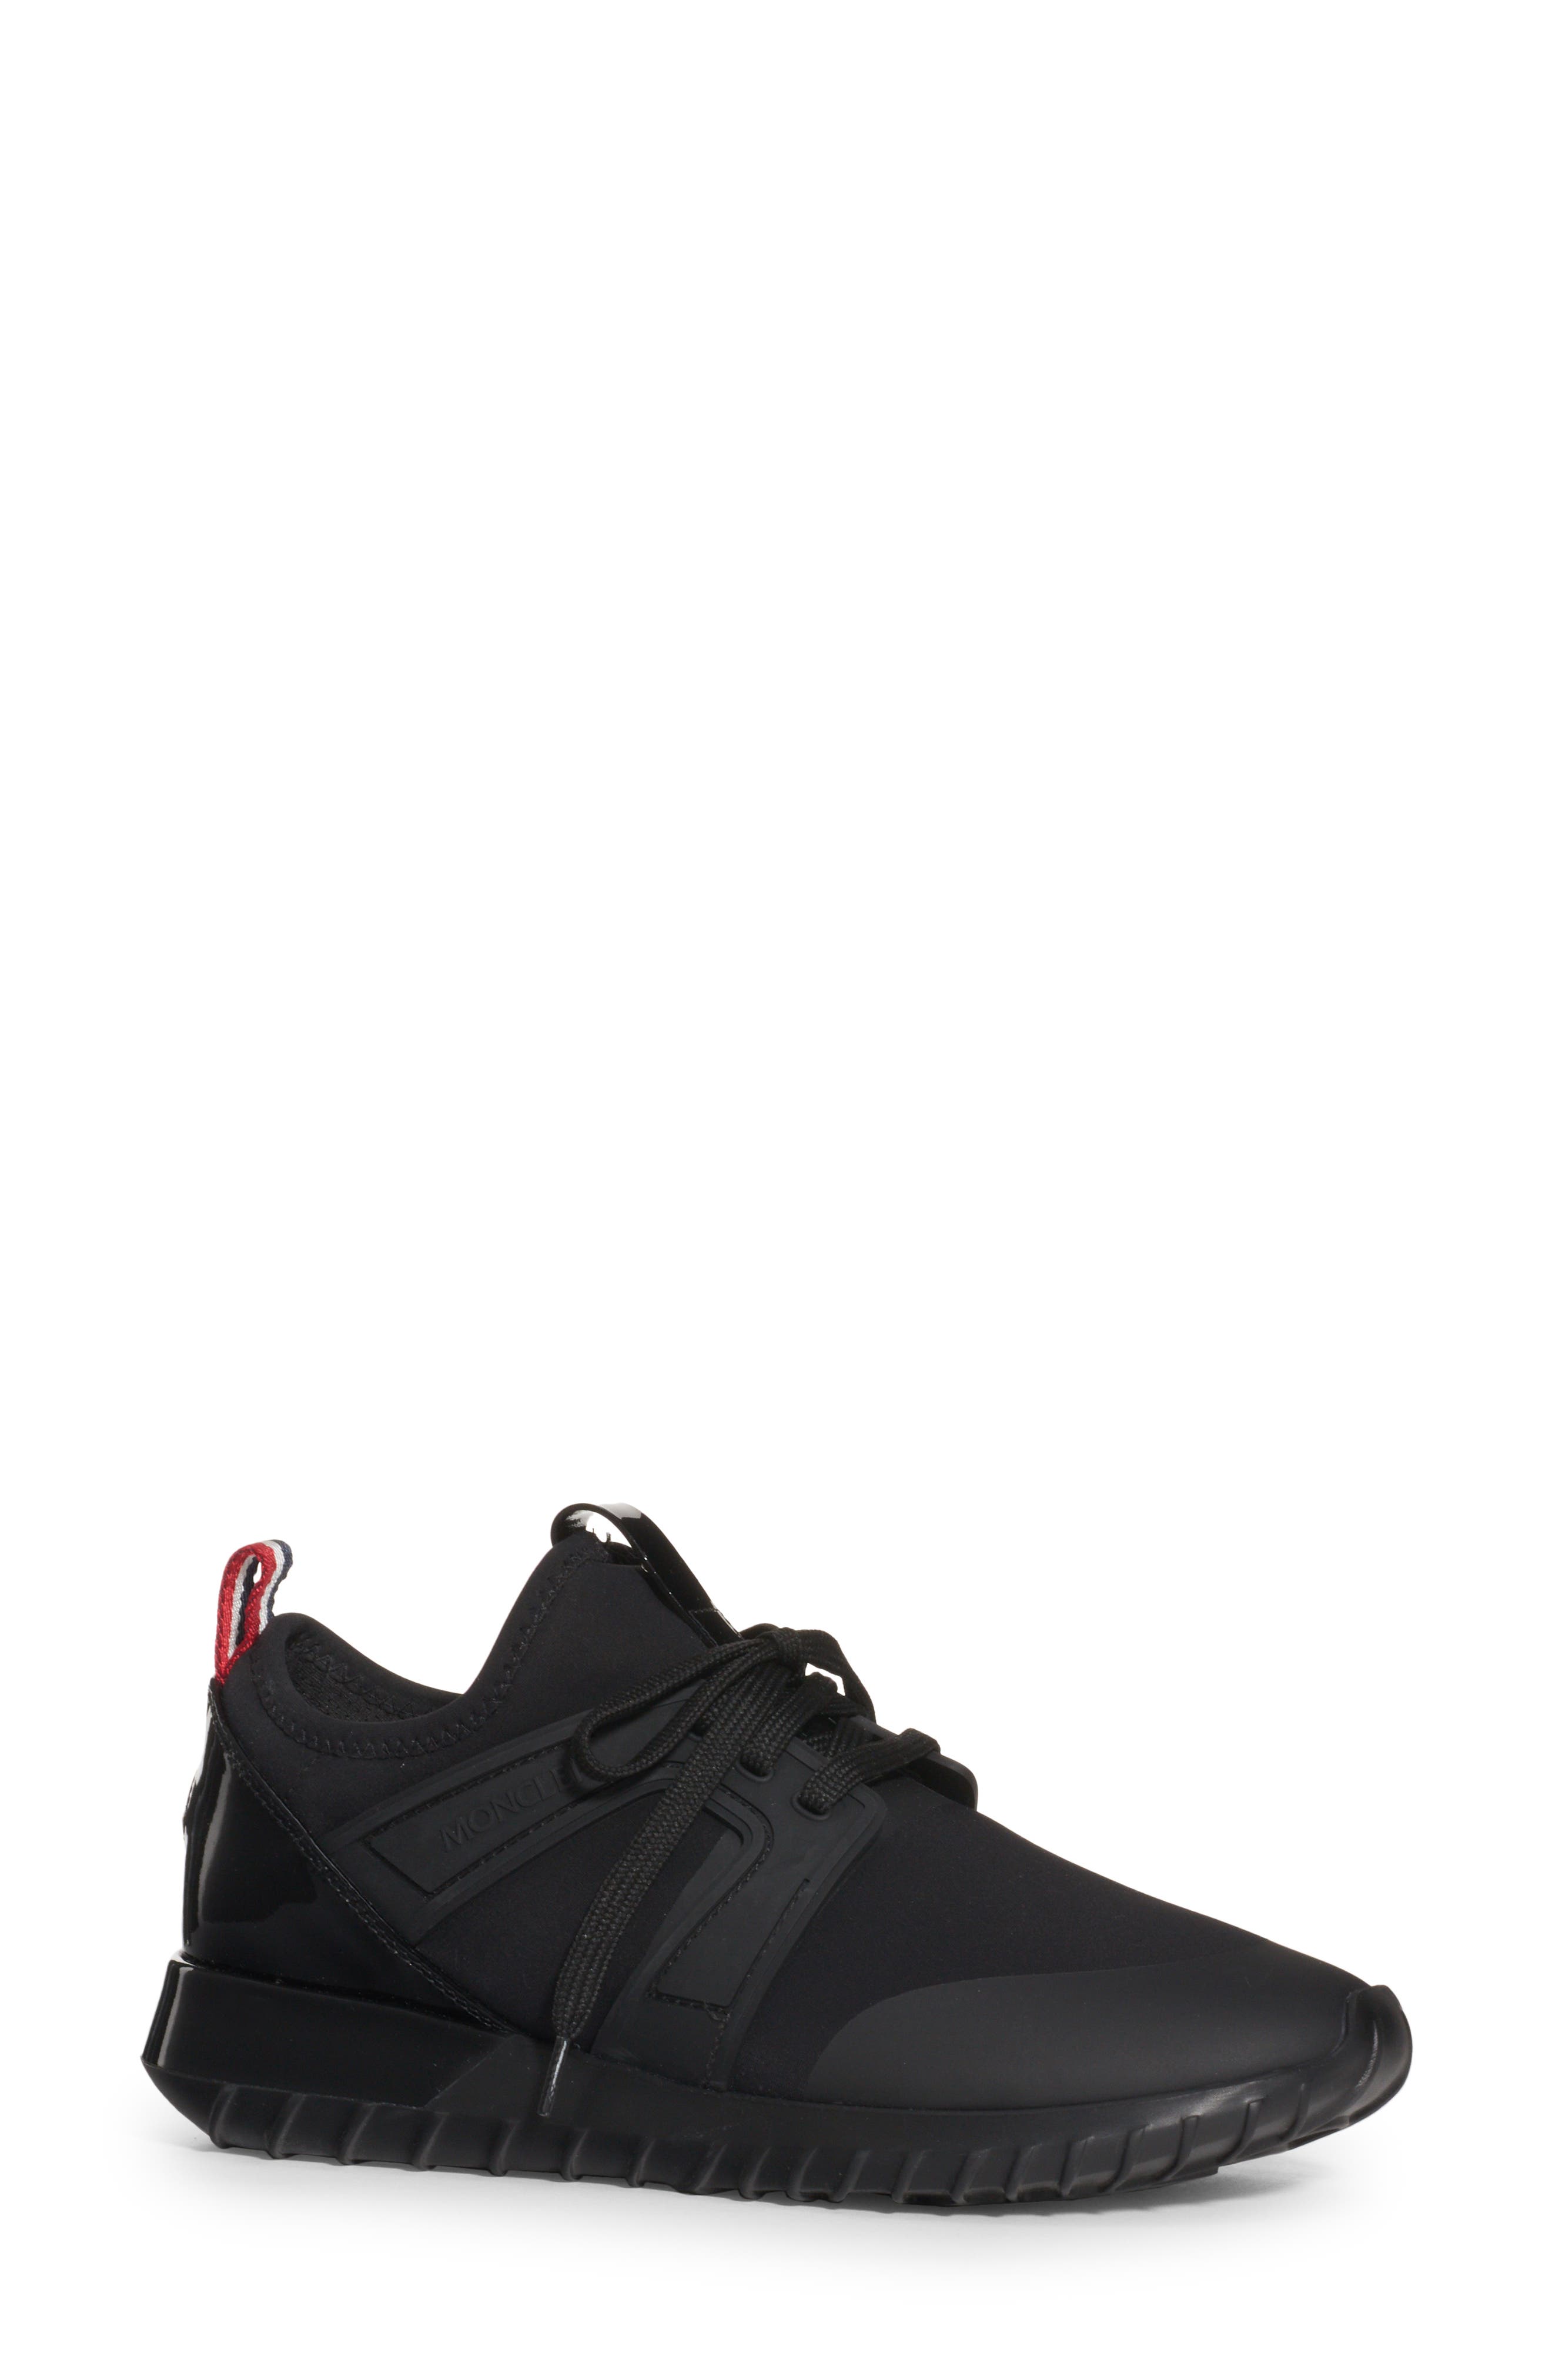 Moncler Meline Sneaker in Black at Nordstrom, Size 11.5Us